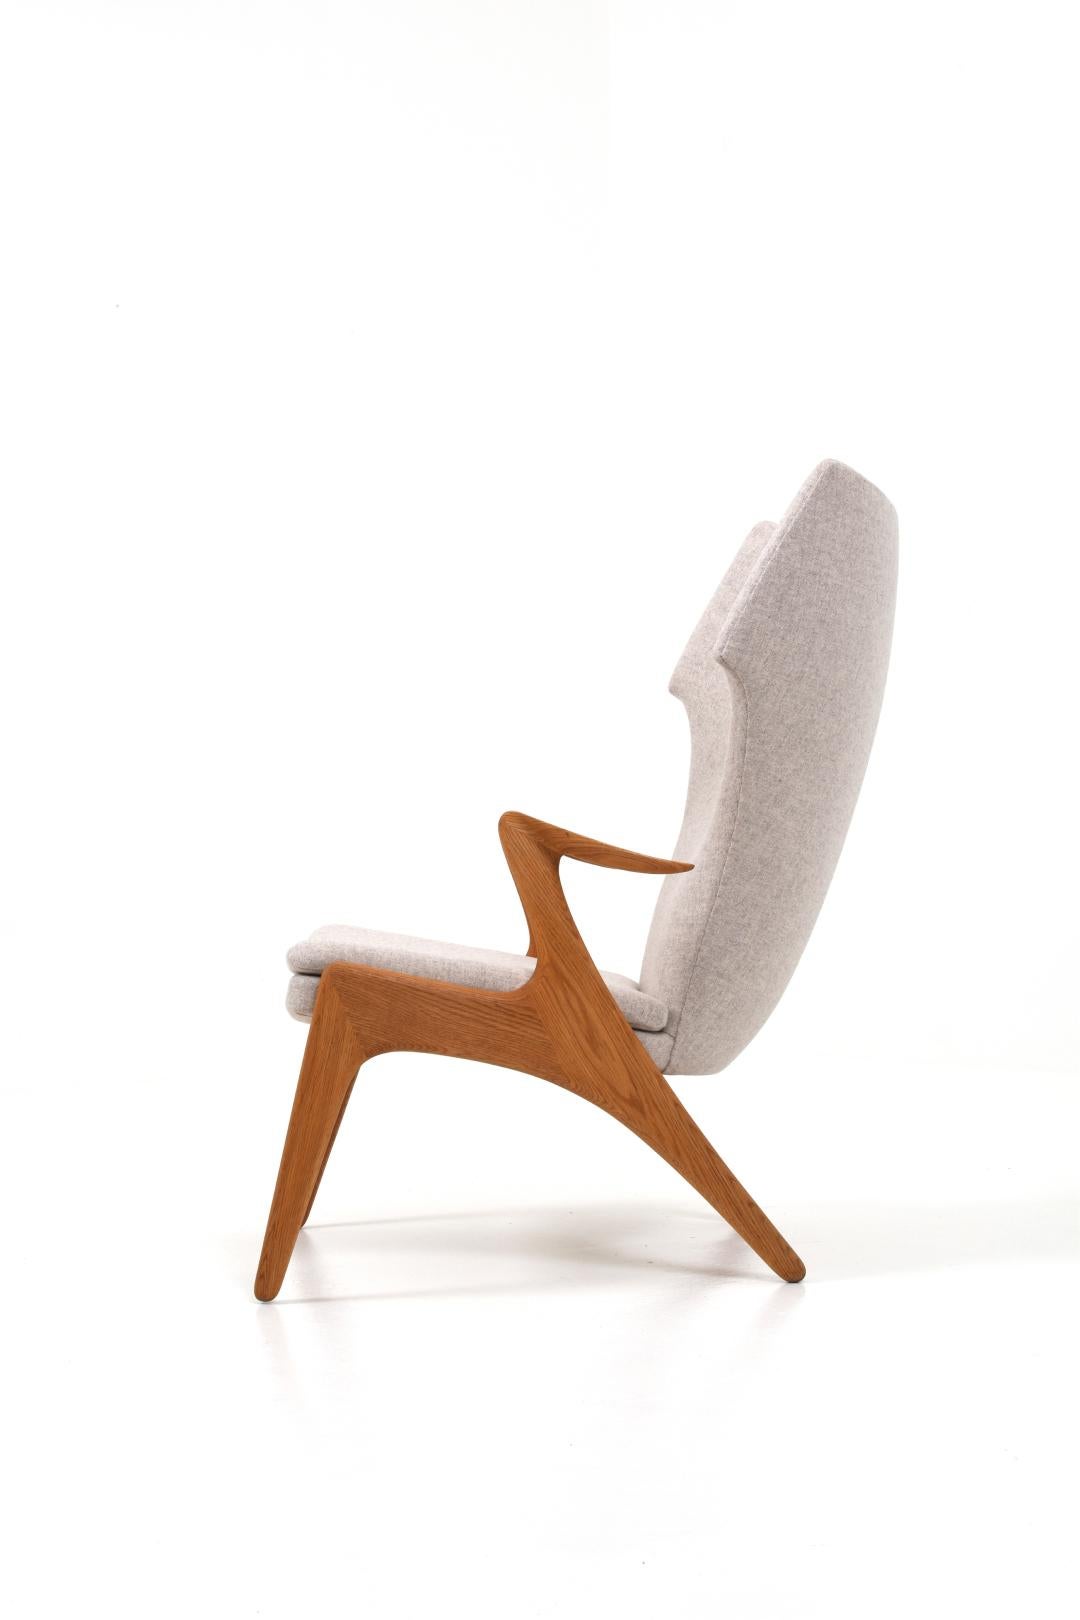 Un fauteuil inhabituel de Kurt Østervig pour Glostrup Møbelfabrik, Danemark.

Le fauteuil à oreilles en chêne danois de Kurt Østervig est un classique intemporel qui rehaussera n'importe quelle décoration intérieure grâce à son style moderne du